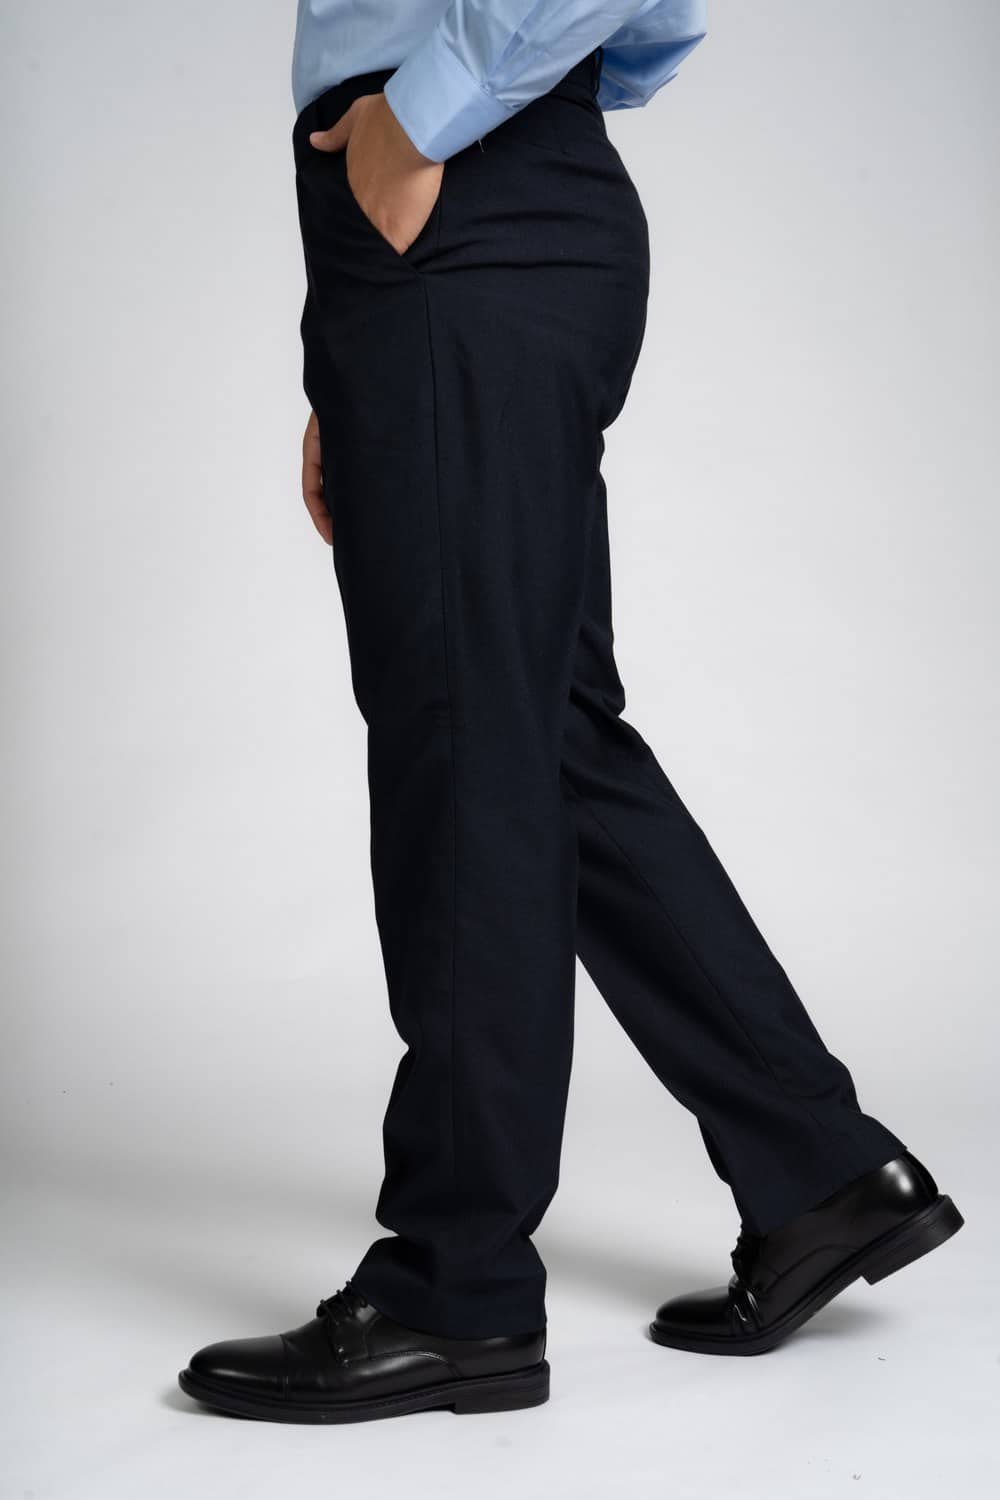 Durapress Hardwearing Trousers in Navy